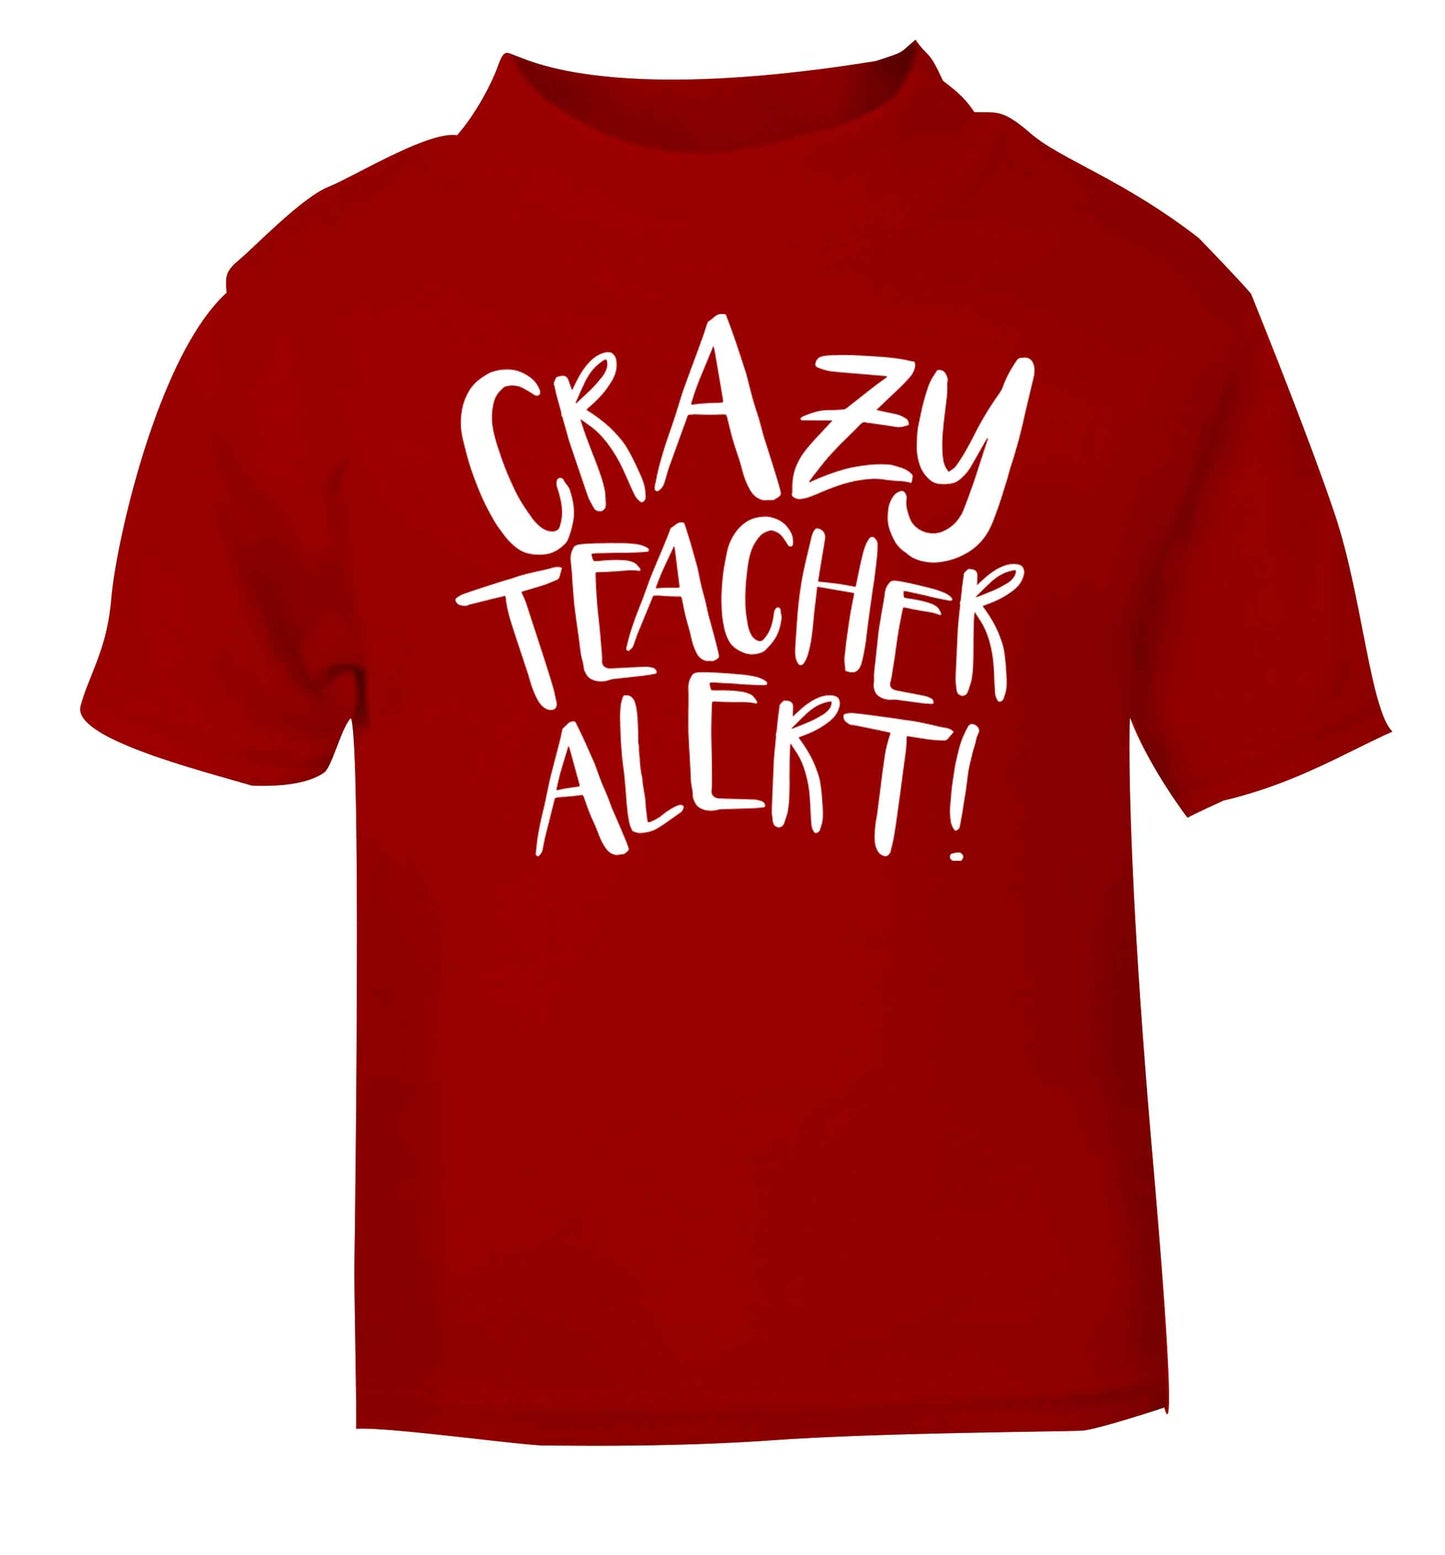 Crazy teacher alert red baby toddler Tshirt 2 Years